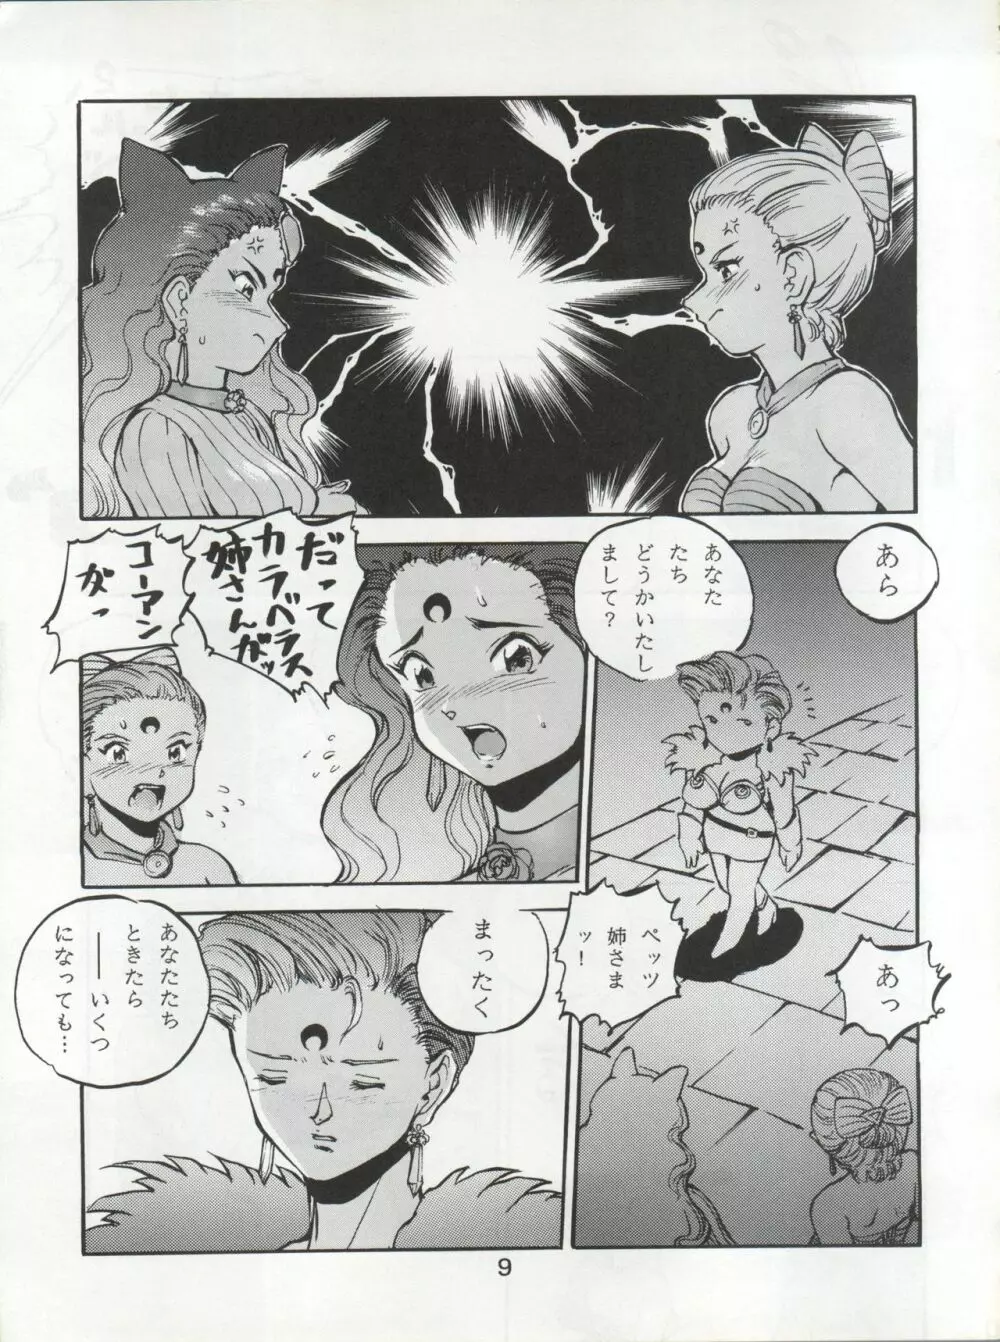 KATZE 7 上巻 - page10